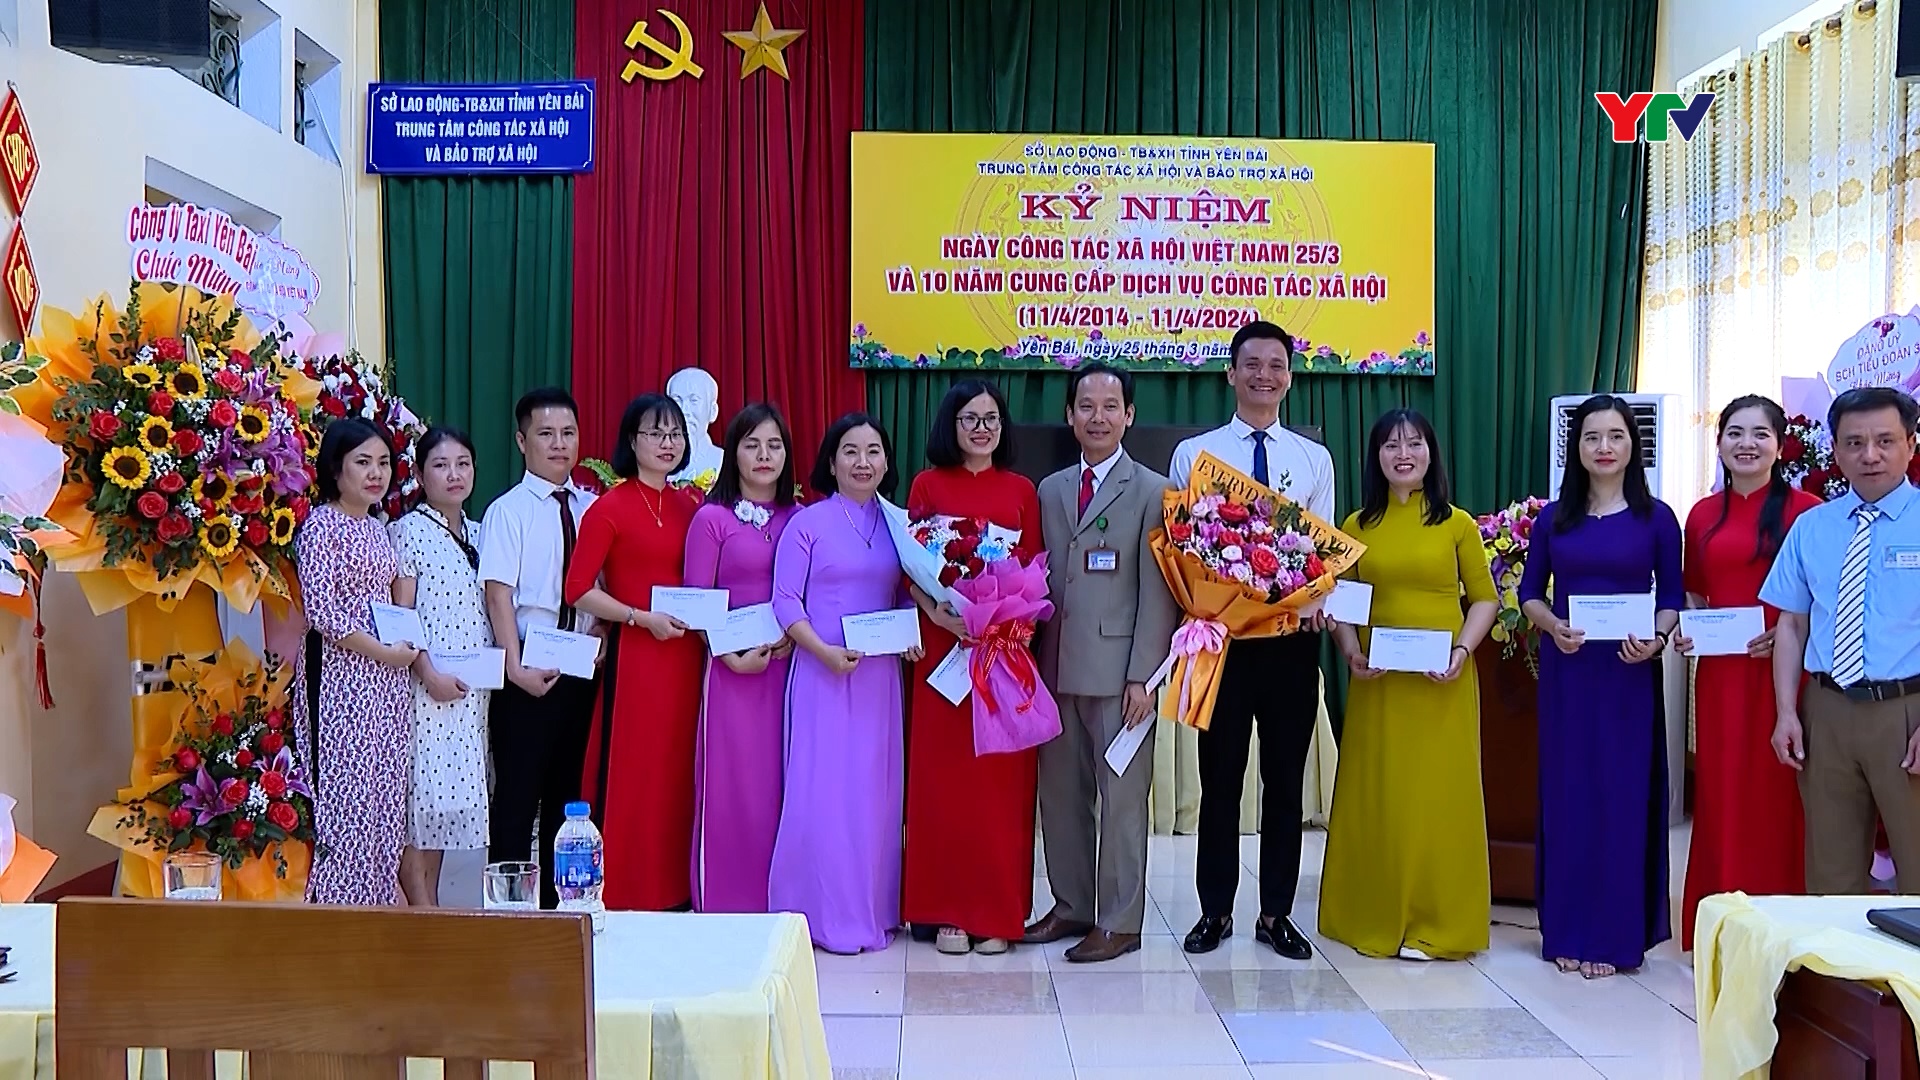 Trung tâm Công tác xã hội và Bảo trợ xã hội kỷ niệm Ngày Công tác xã hội Việt Nam